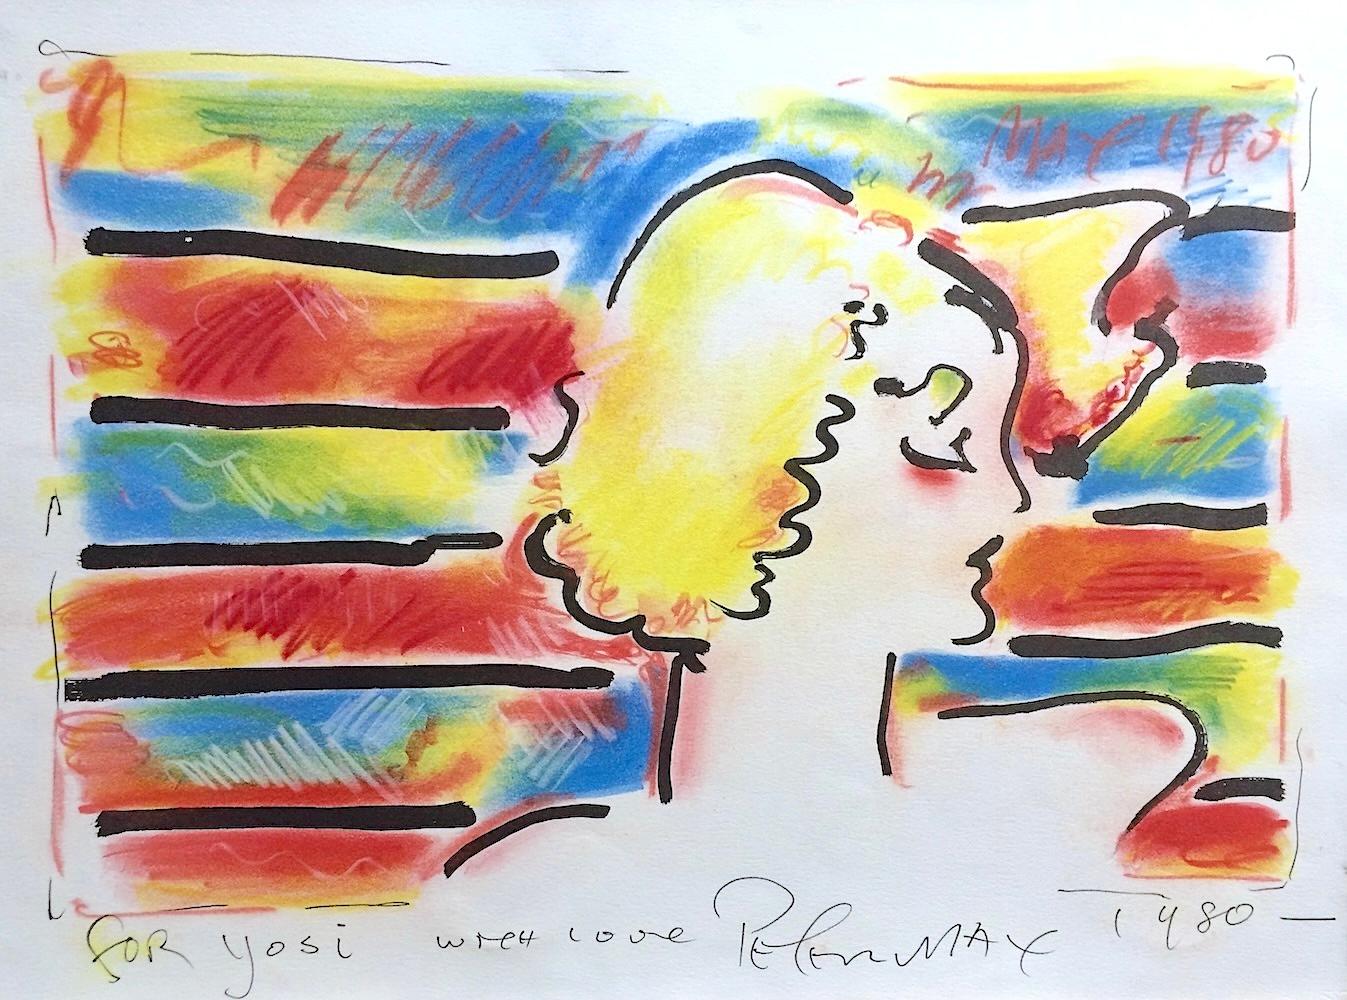 AMERICAN WOMAN ist eine handgezeichnete Original-Lithografie, die von dem bekannten amerikanischen Pop-Art-Künstler Peter Max mit Handkolorierung versehen wurde. AMERICAN WOMAN wurde 1980 in traditioneller Handlithografie auf 100% säurefreiem